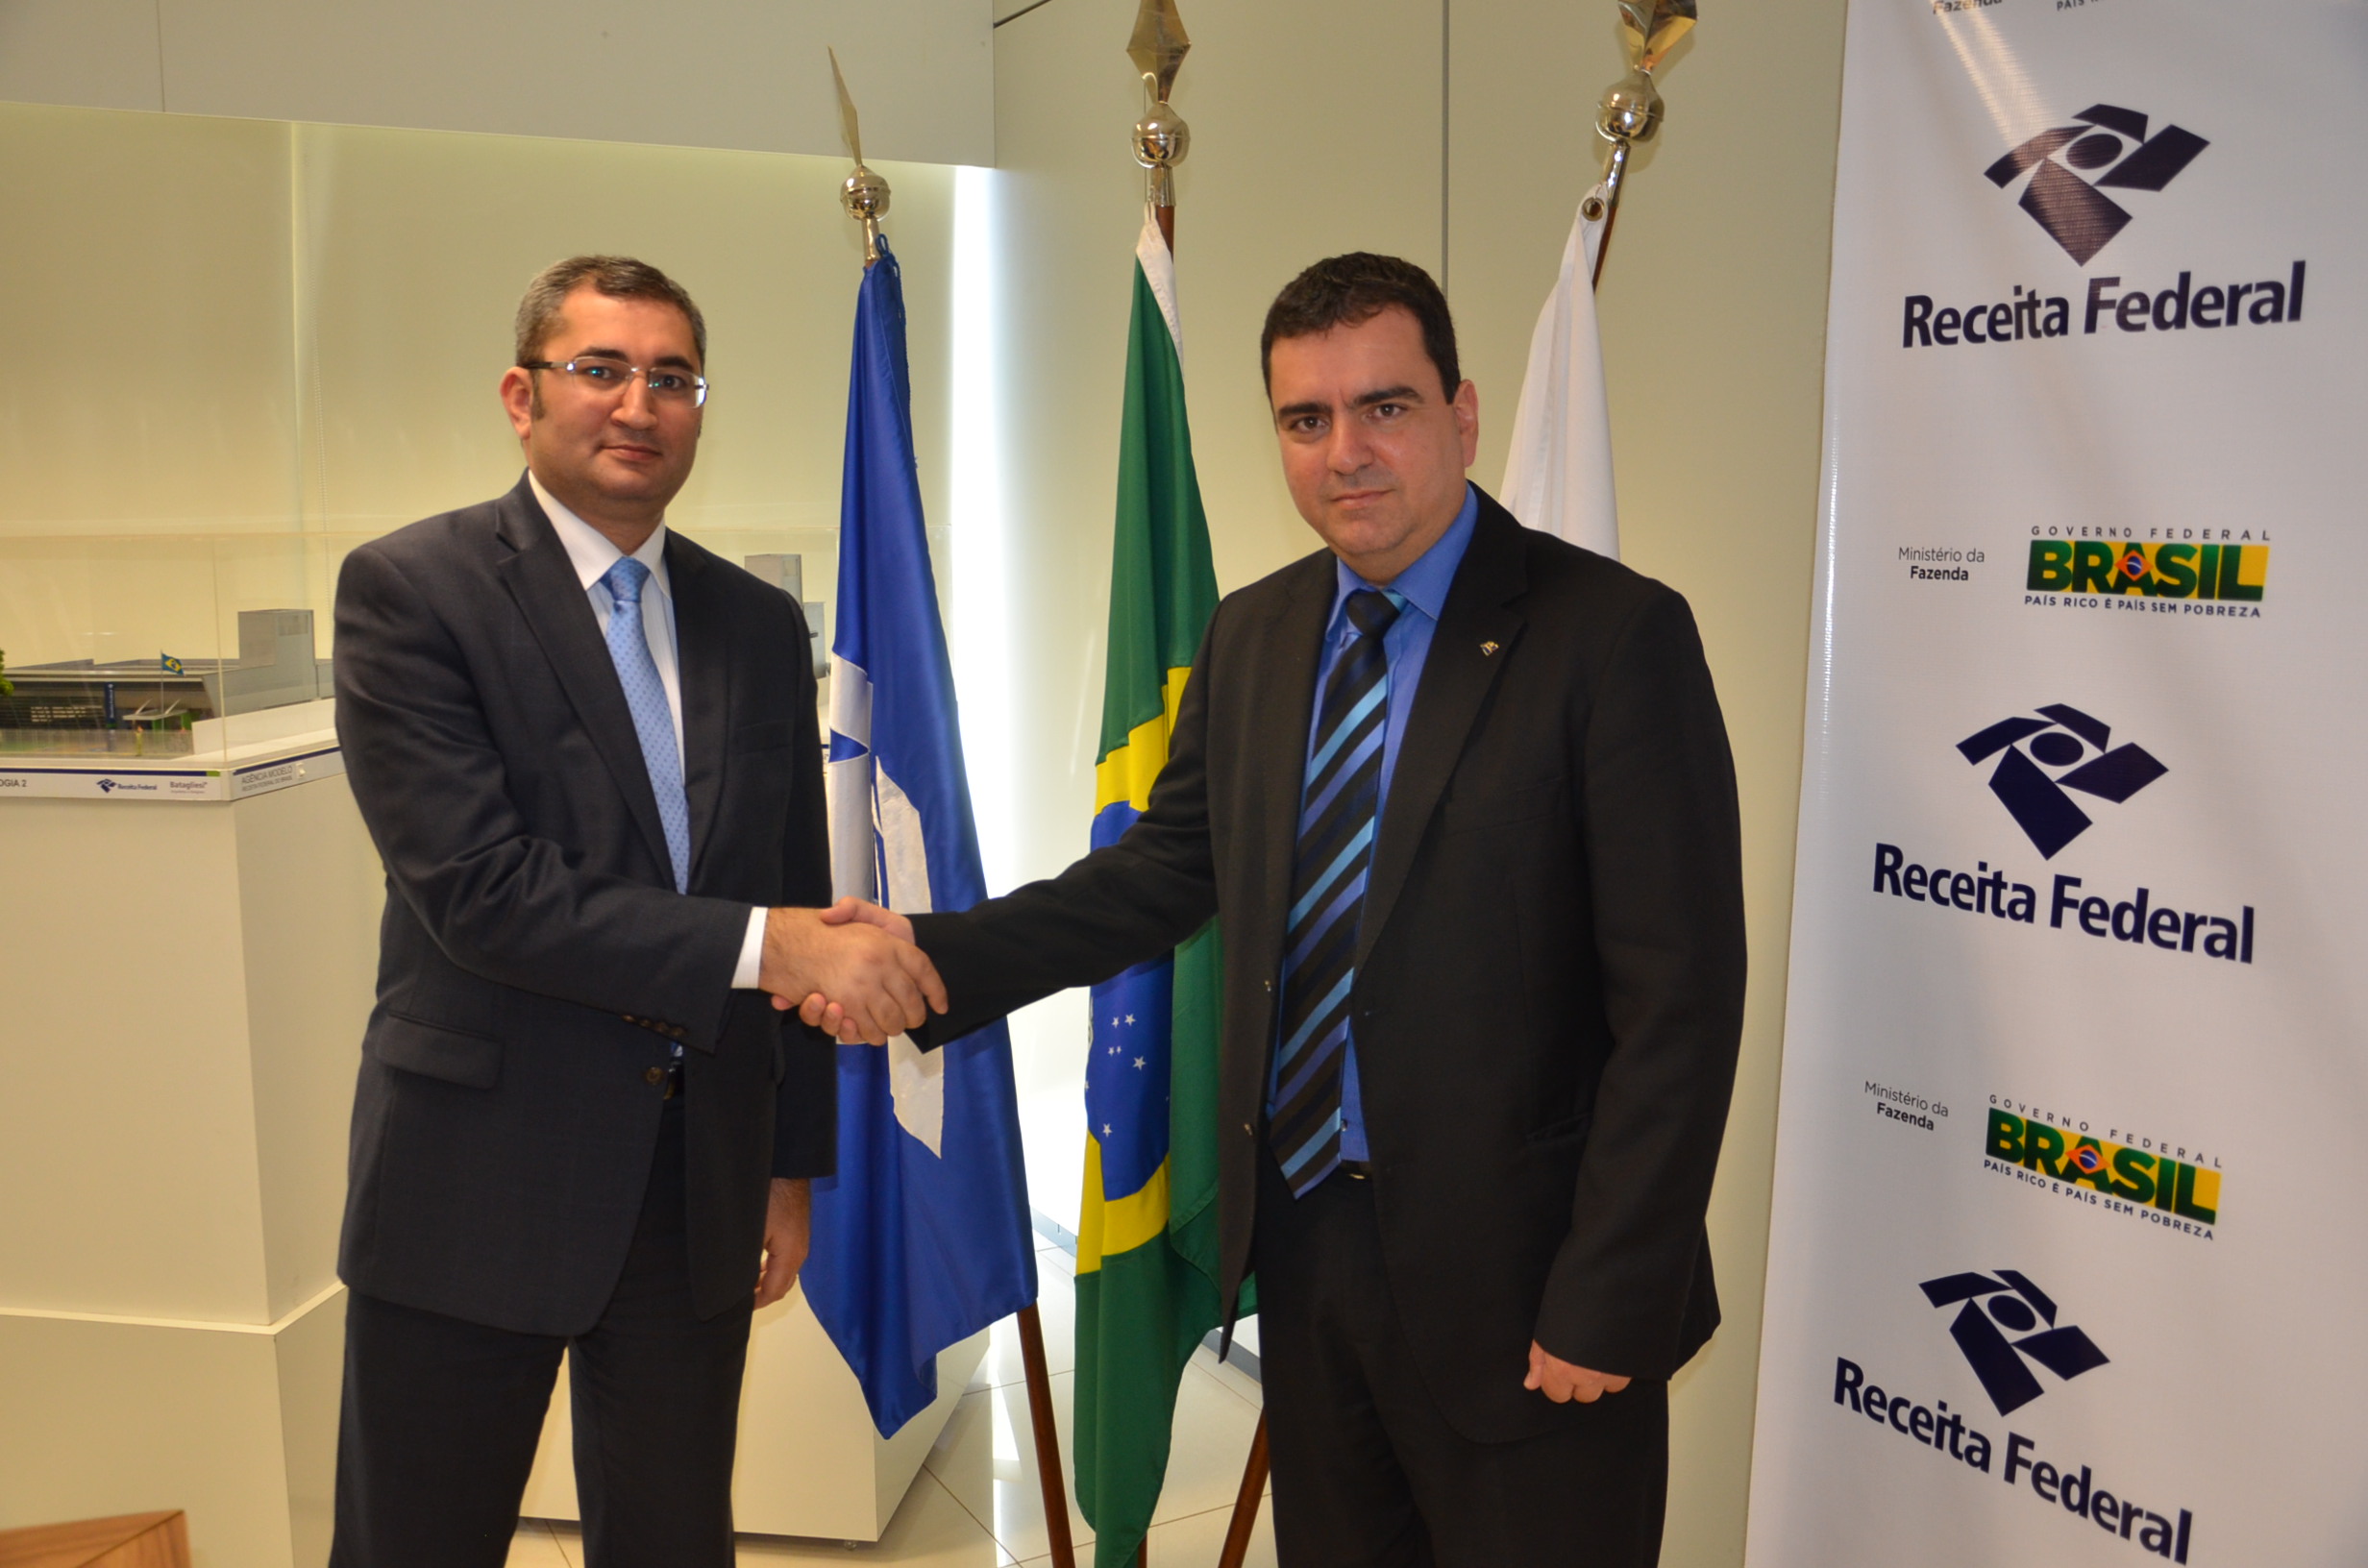 Azerbaijan, Brazil interested in customs co-op